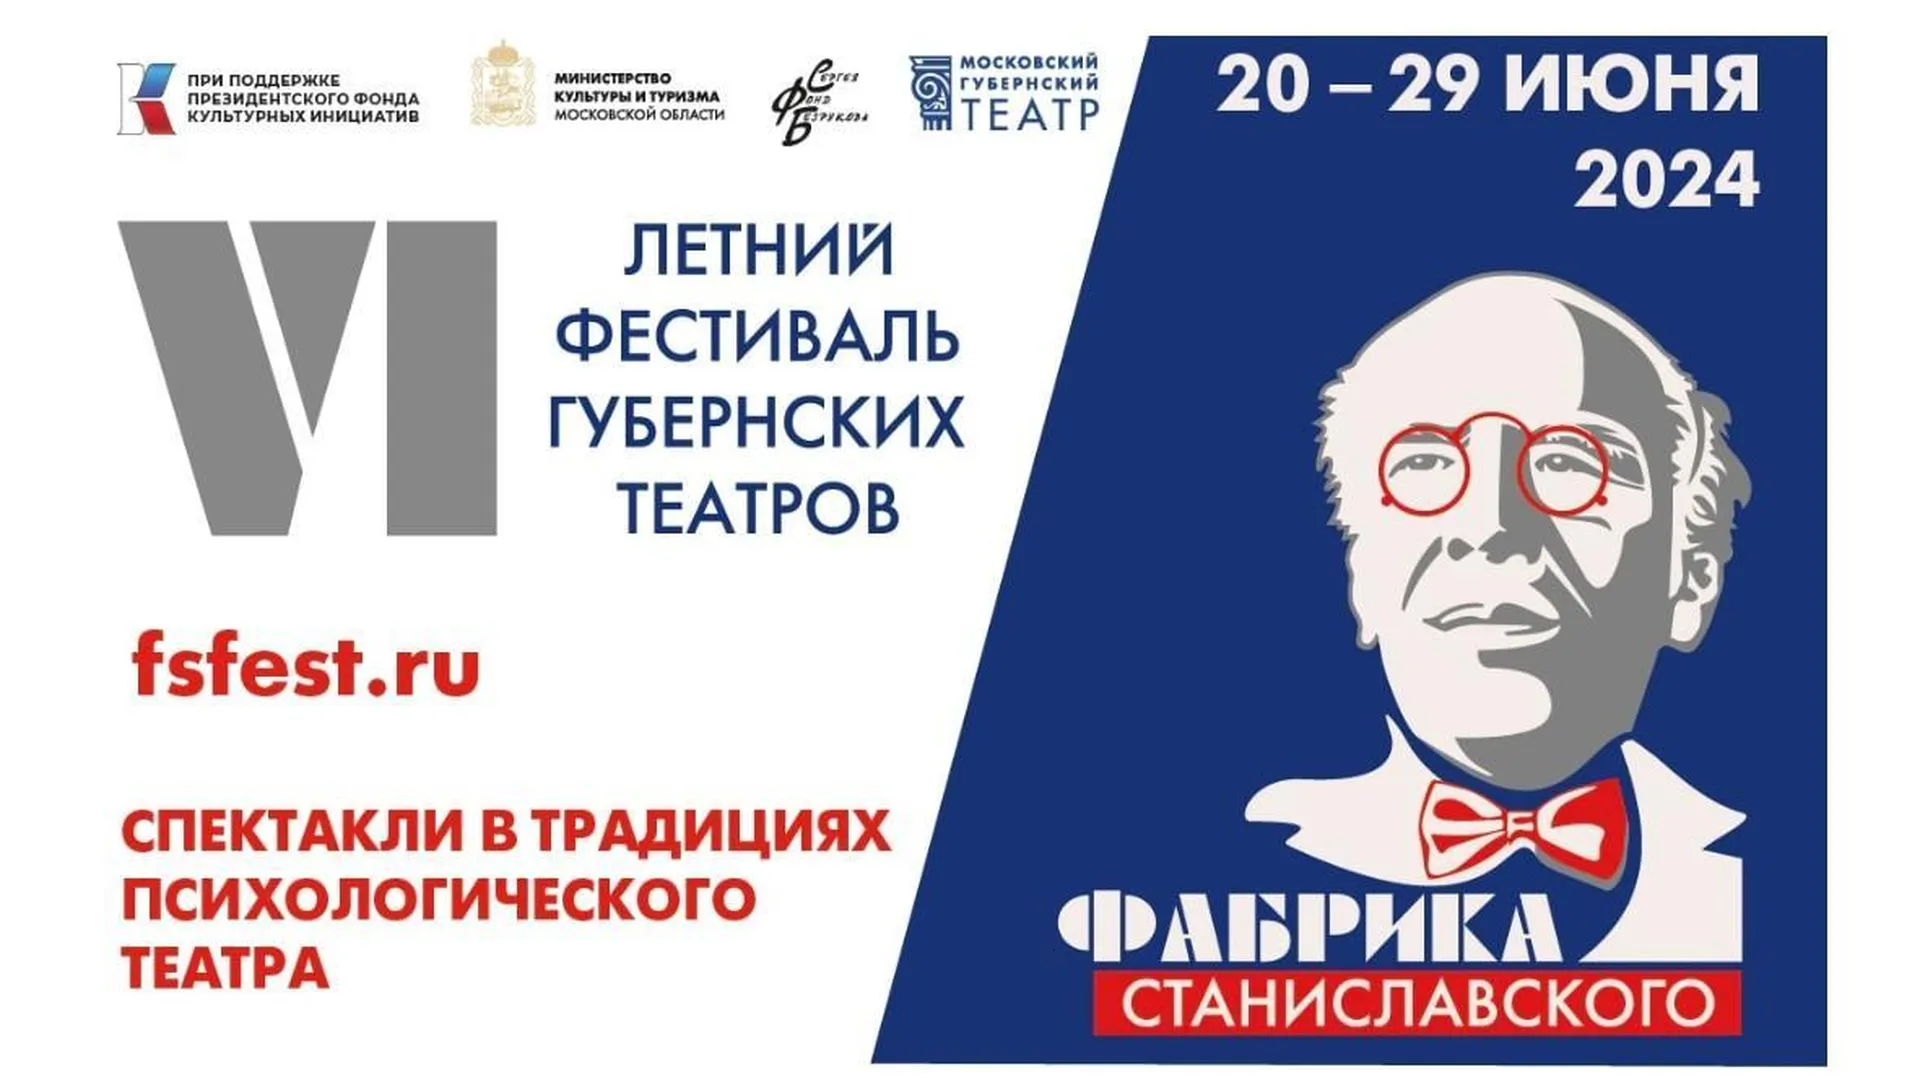 VI Летний фестиваль губернских театров «Фабрика Станиславского» откроется 20 июня в Москве